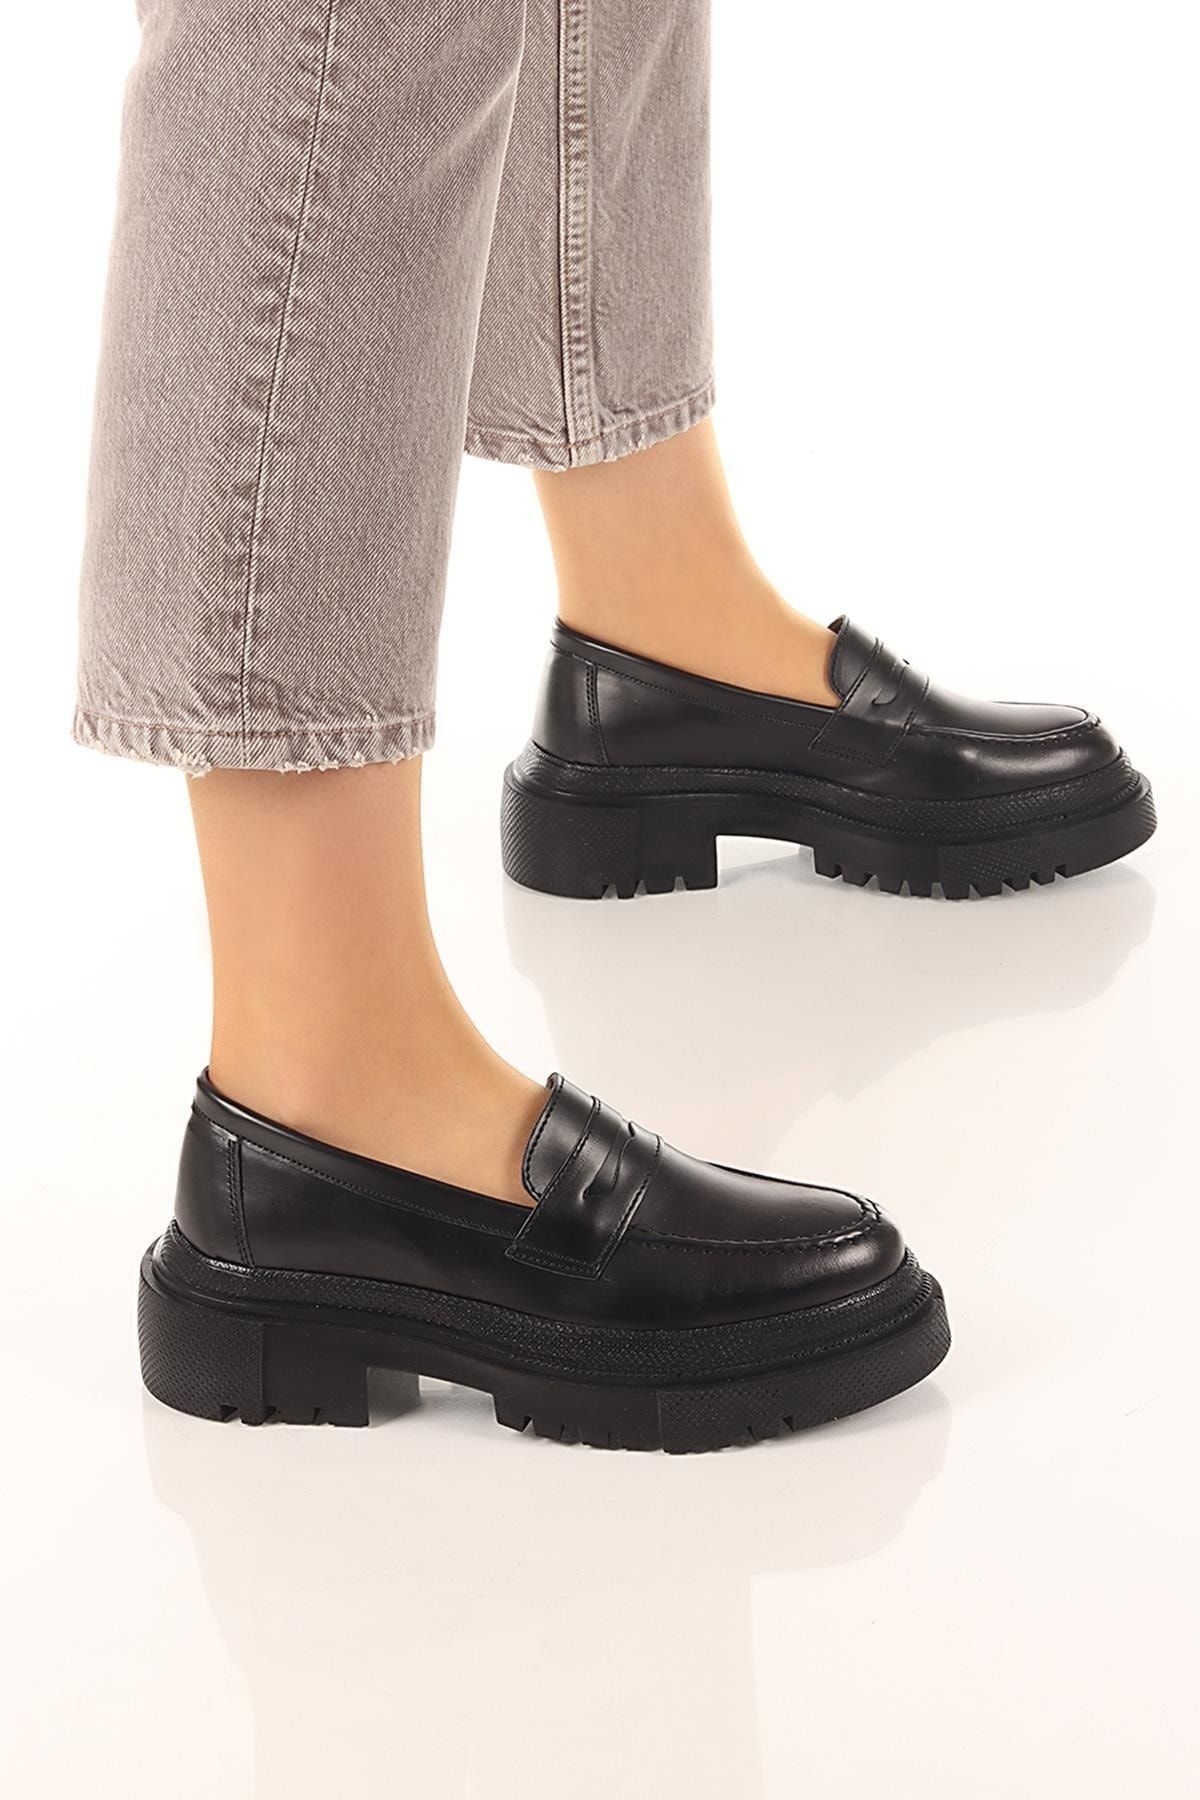 sobay shoes Kadın Loafer Yuvarlak Burun Maskülen Bağcıksız Yüksek Dolgu Taban Oxford Ayakkabı Soby11080001